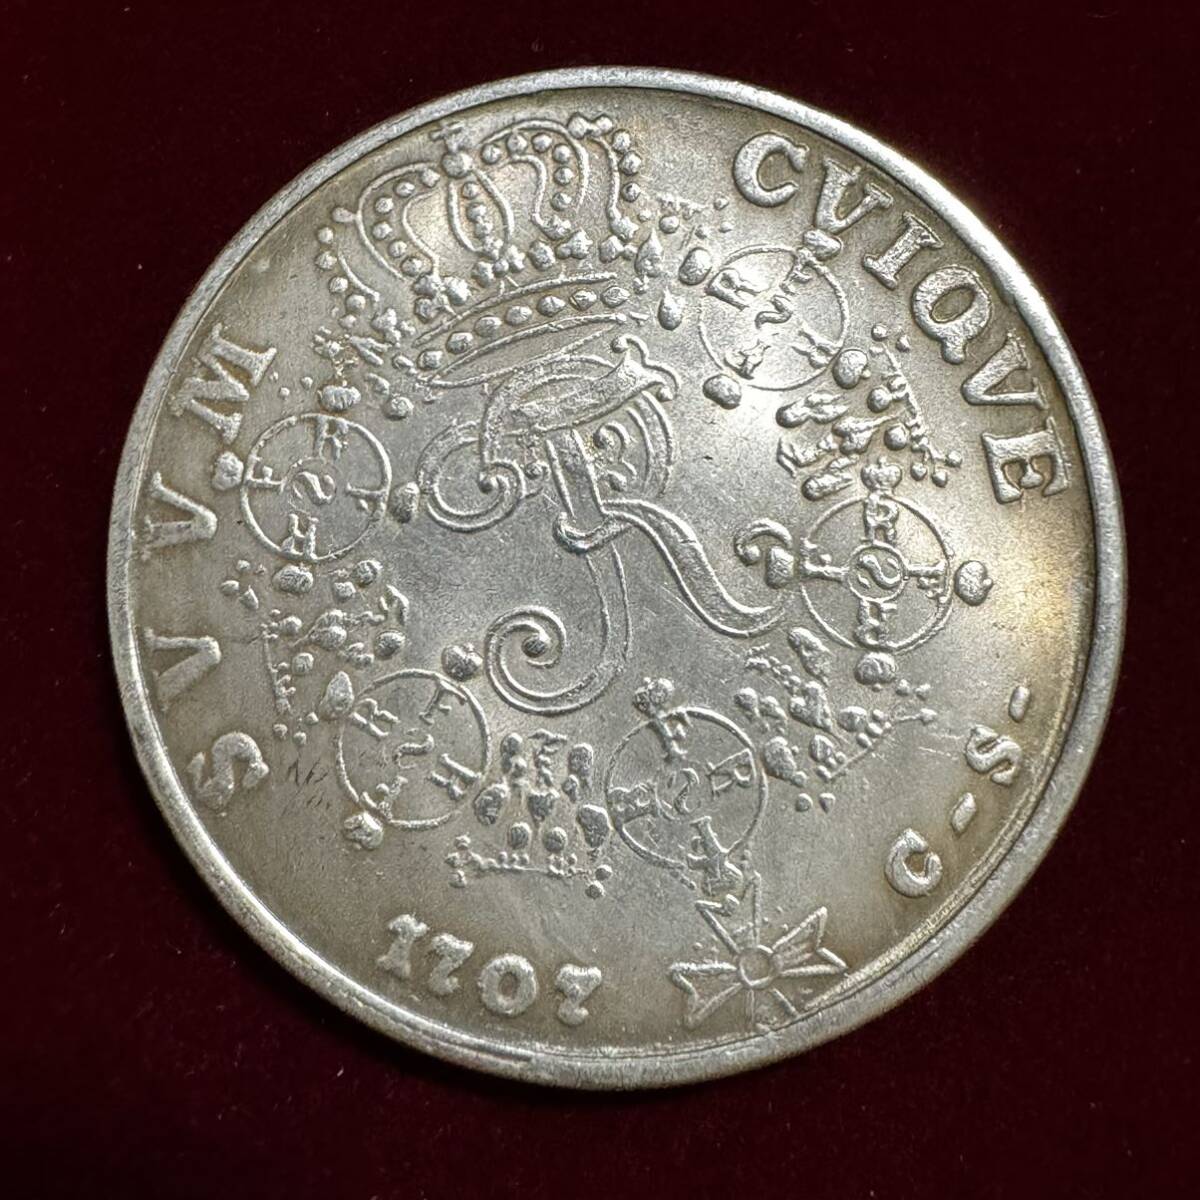 ドイツ プロイセン王国 硬貨 古銭 1707年 フリードリヒ1世 月桂樹 国章 クラウン コイン 銀貨 外国古銭 海外硬貨 の画像1